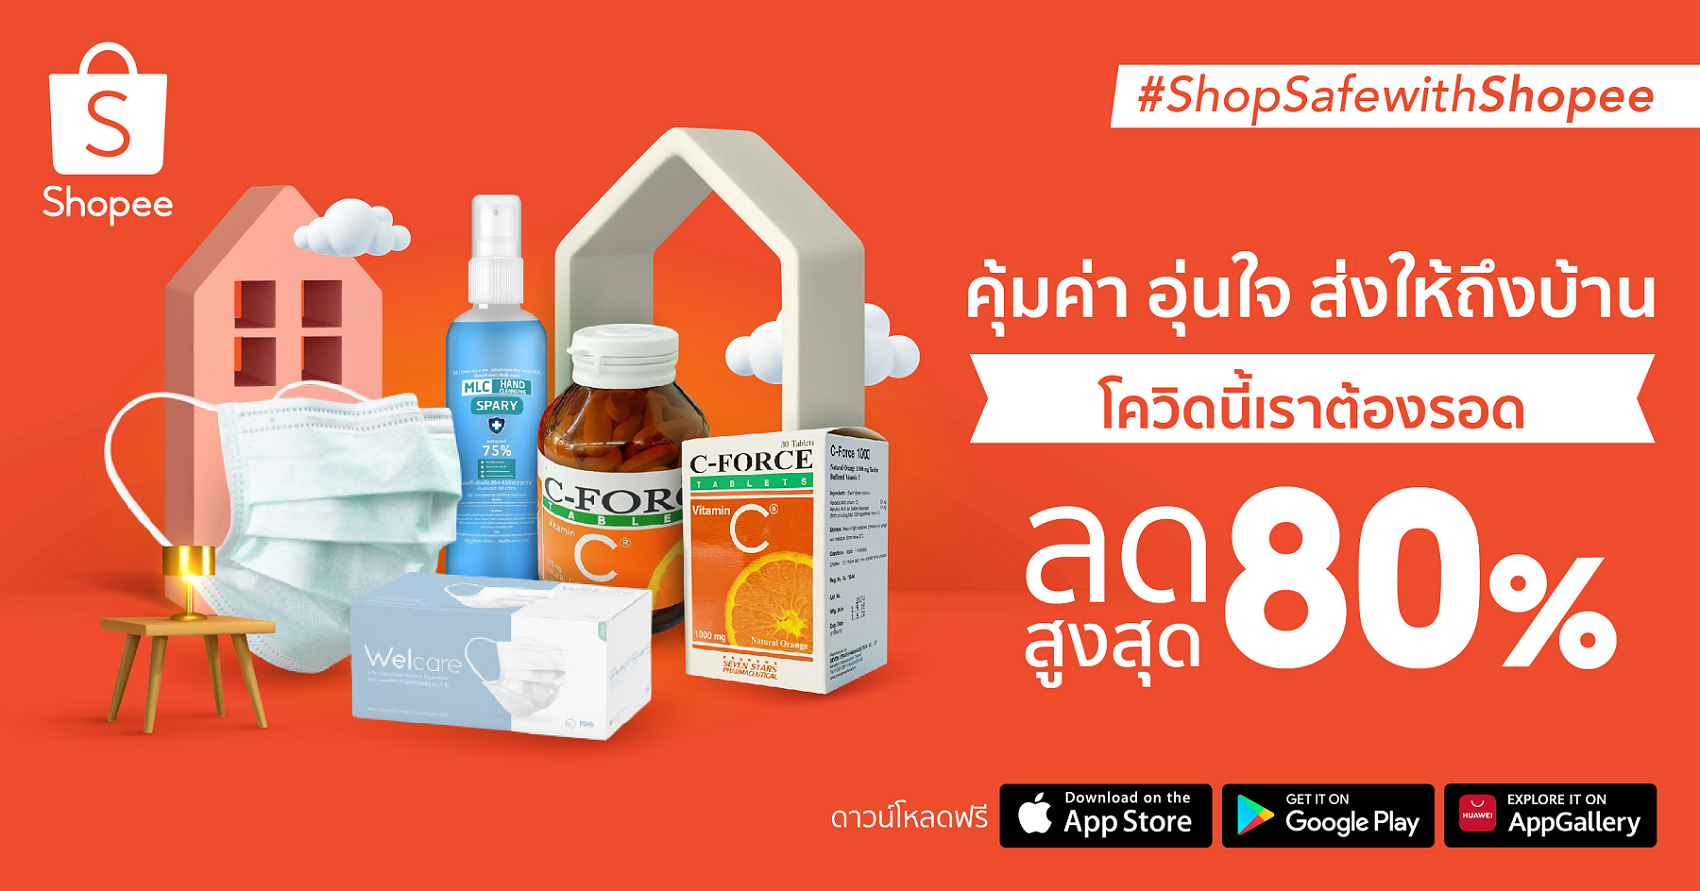 ร่วมด้วยช่วยคนไทยกับ "Shop Safe with Shopee คุ้มค่า อุ่นใจ ส่งให้ถึงบ้าน"